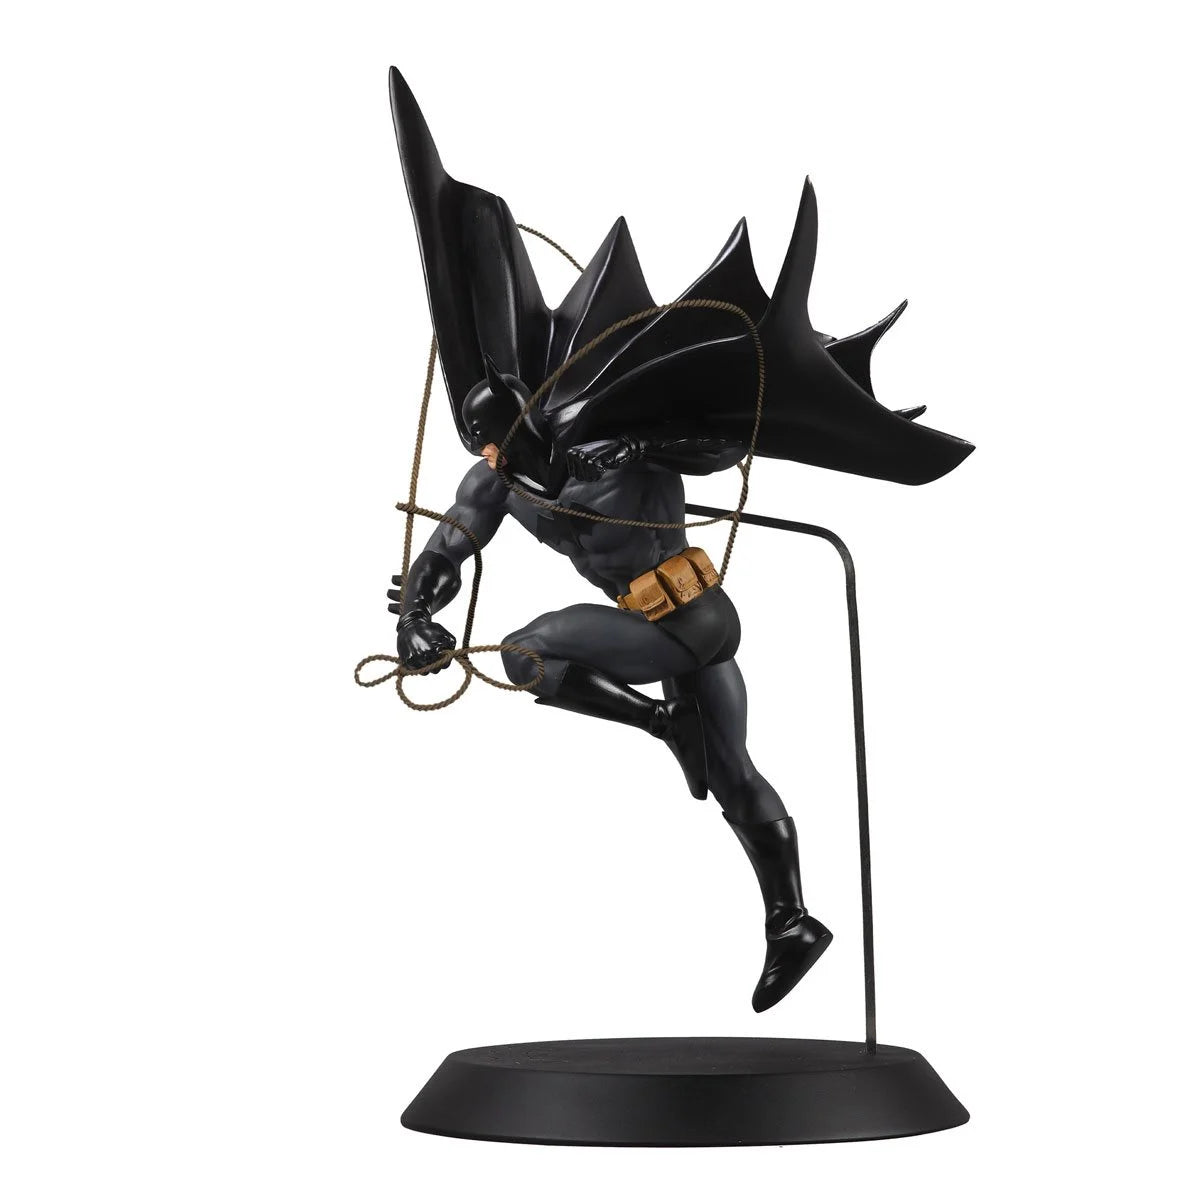 DC Direct DC Designer Series Batman by Dan Mora 1:6 Scale Resin Statue